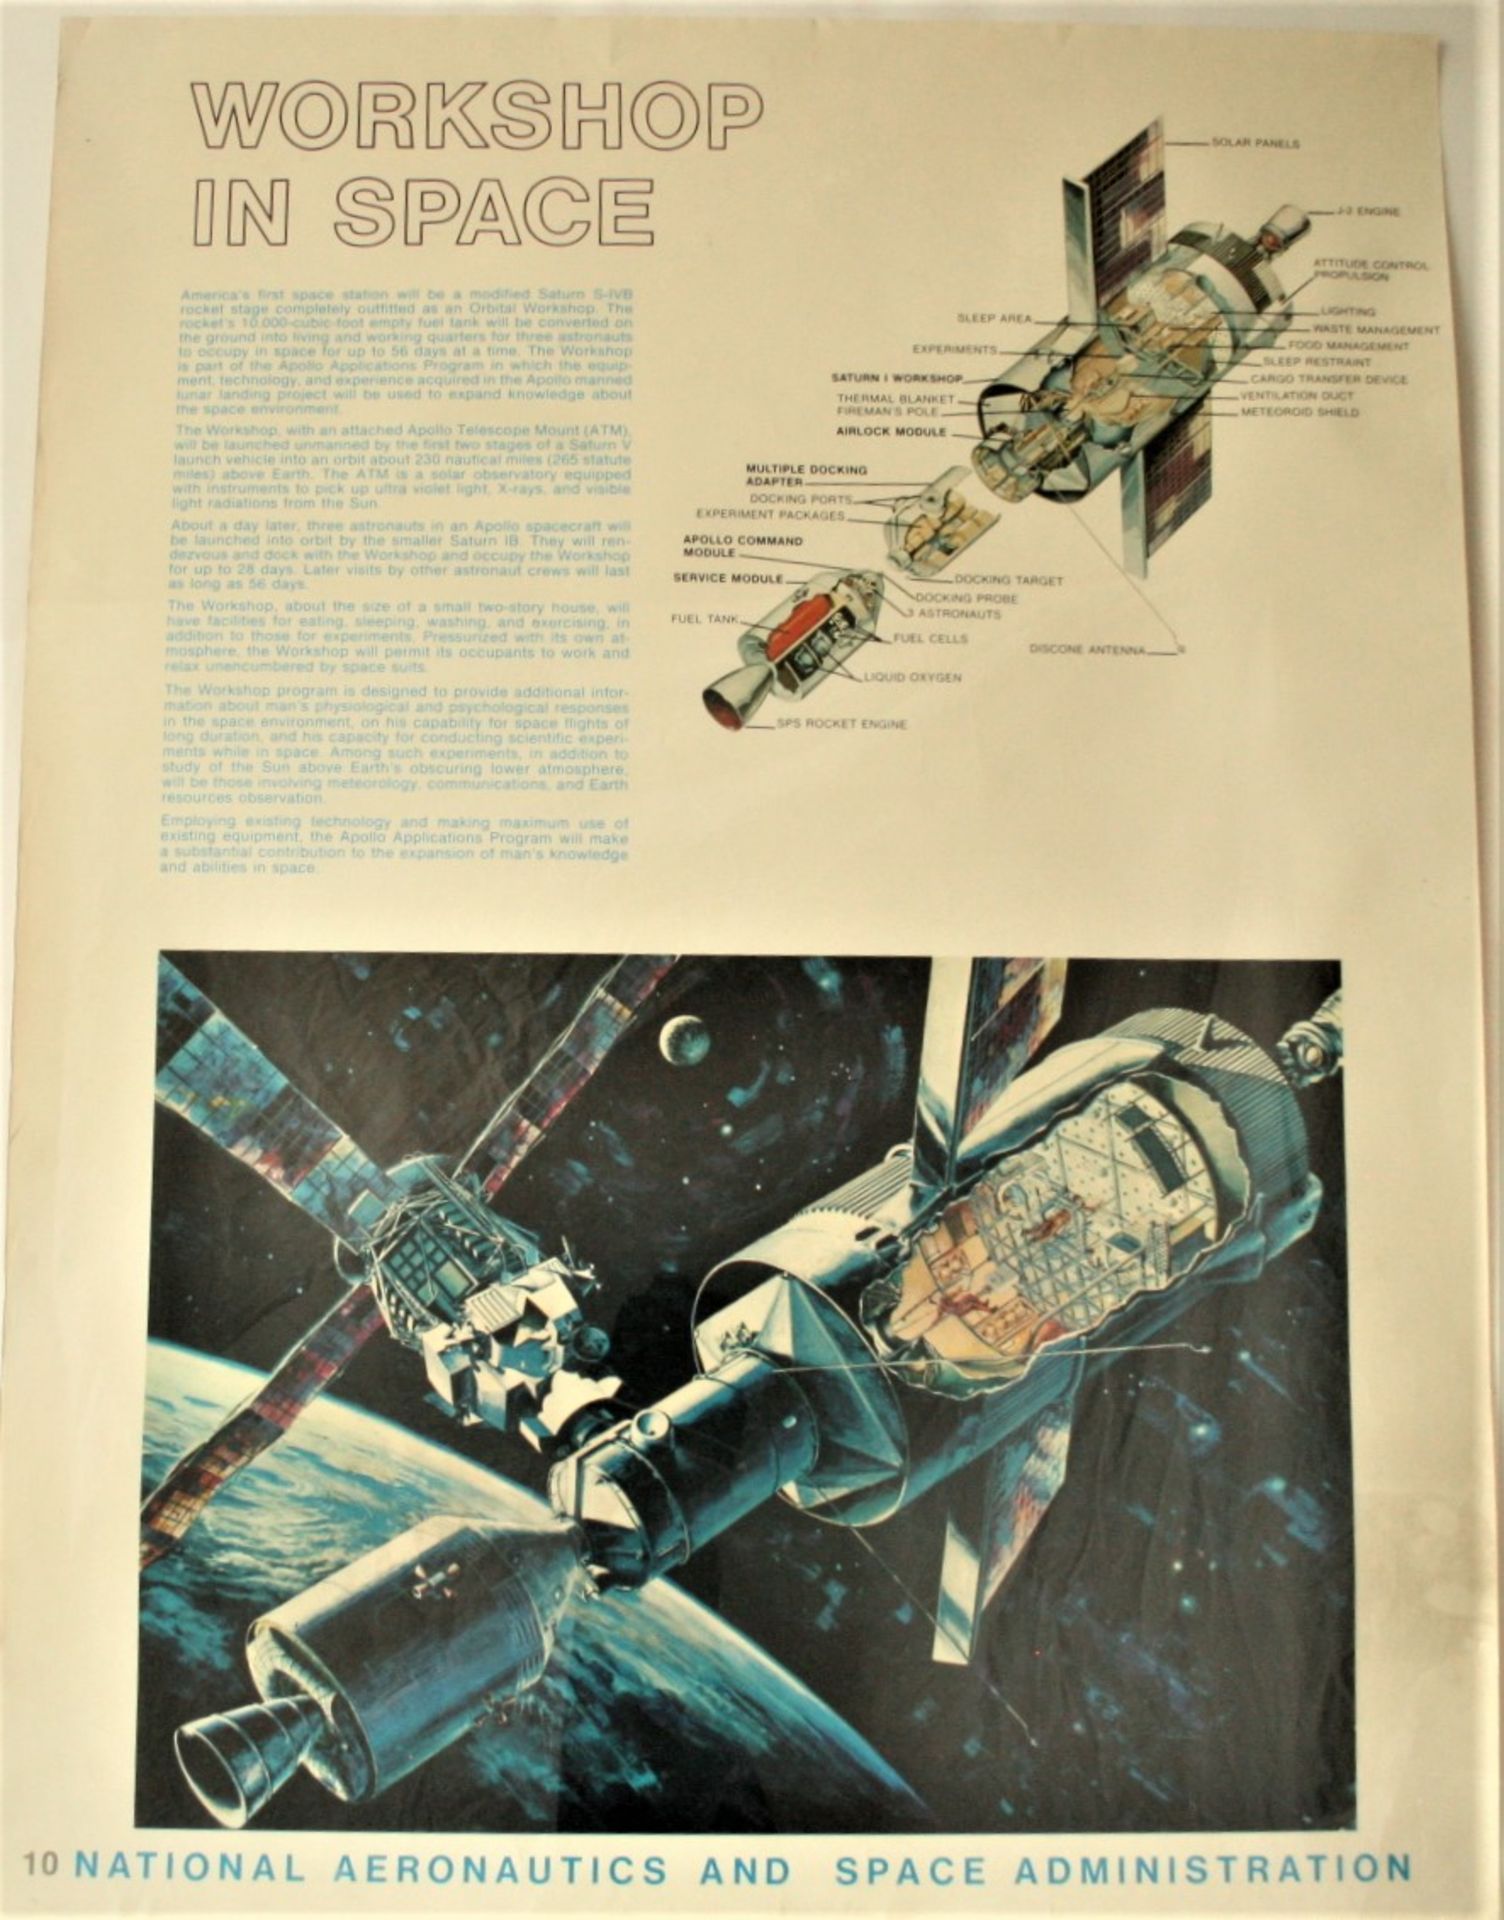 Affiche # 10 de la NASA de l'époque d'APOLLO XI "WORKSHOP IN SPACE", ca 1969, bon [...]